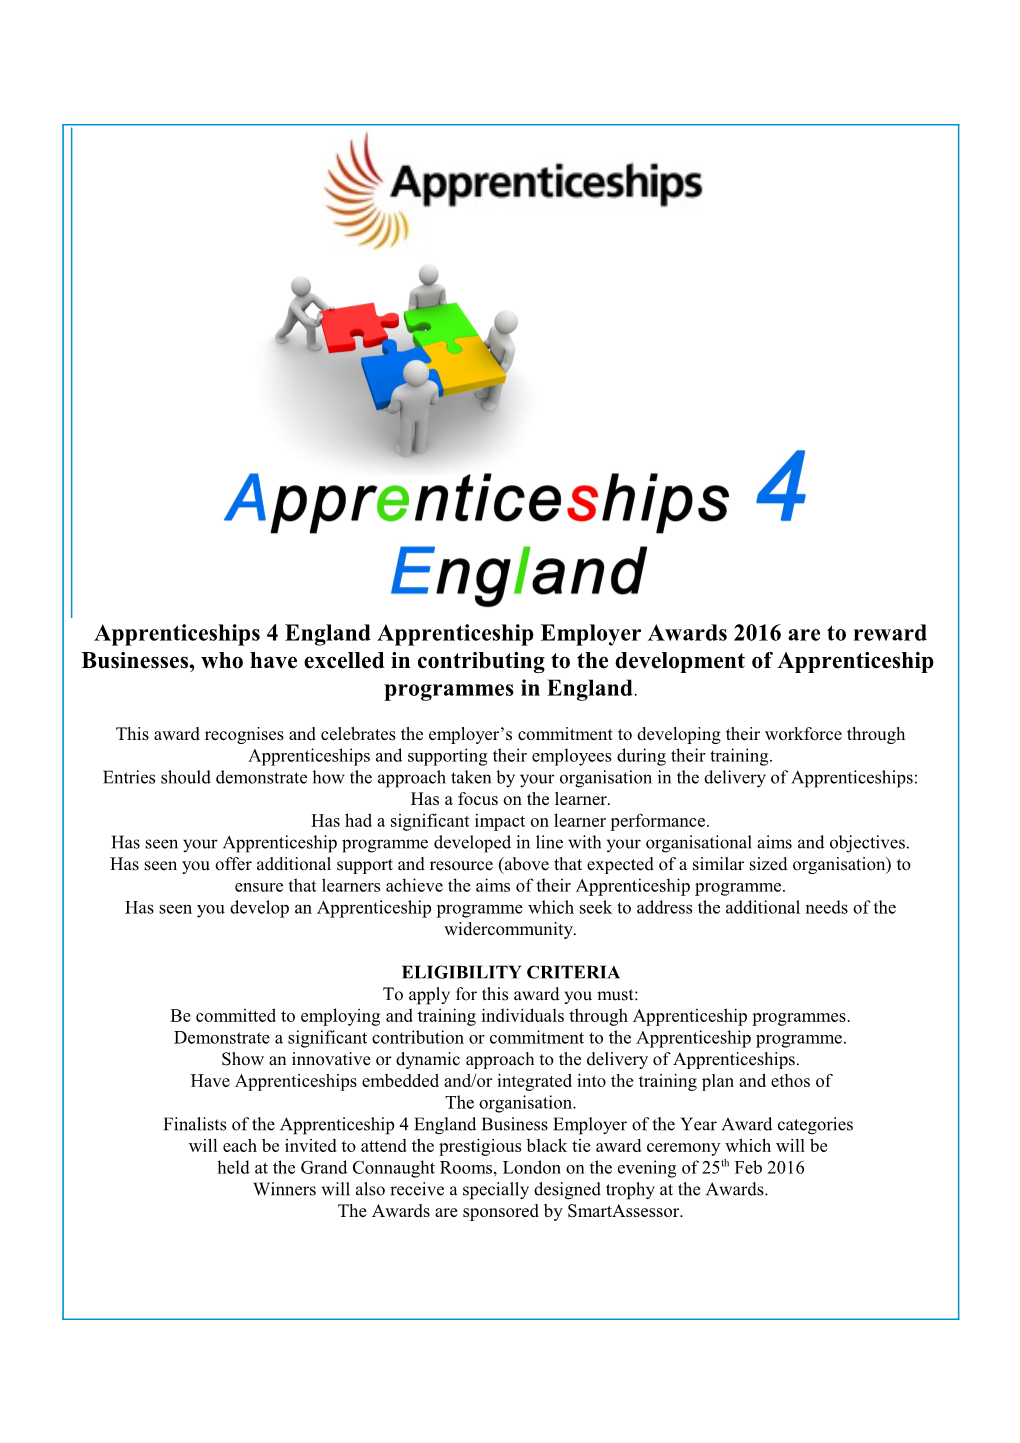 Apprenticeships 4 England Apprenticeship Employer Awards 2016 Are to Reward